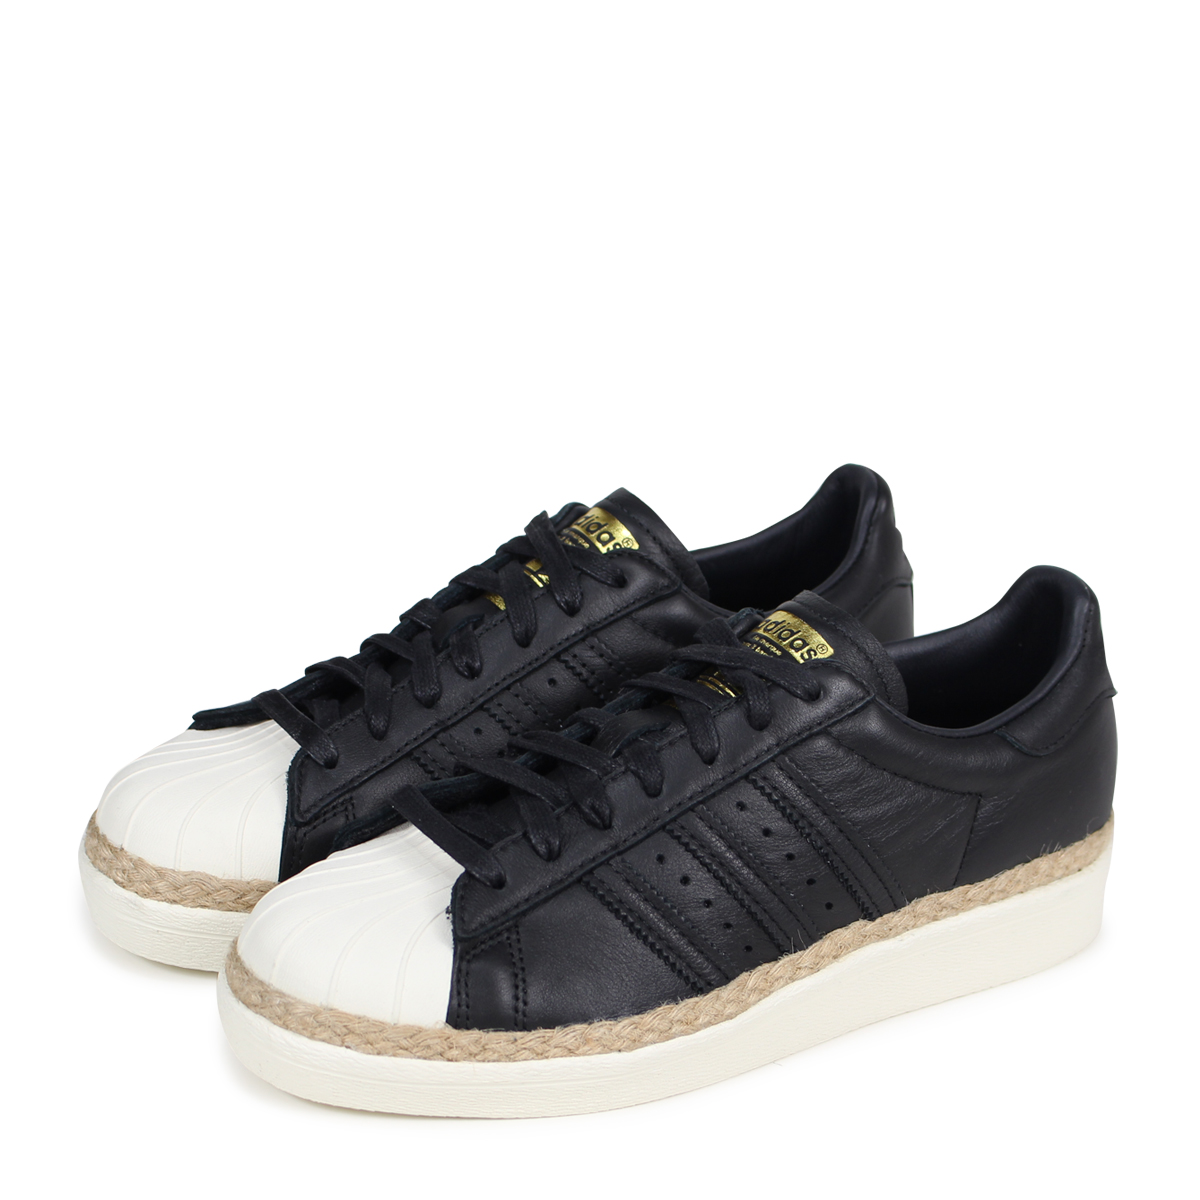 ALLSPORTS: Sneakers CQ2365 black originals lady's for adidas Originals ...